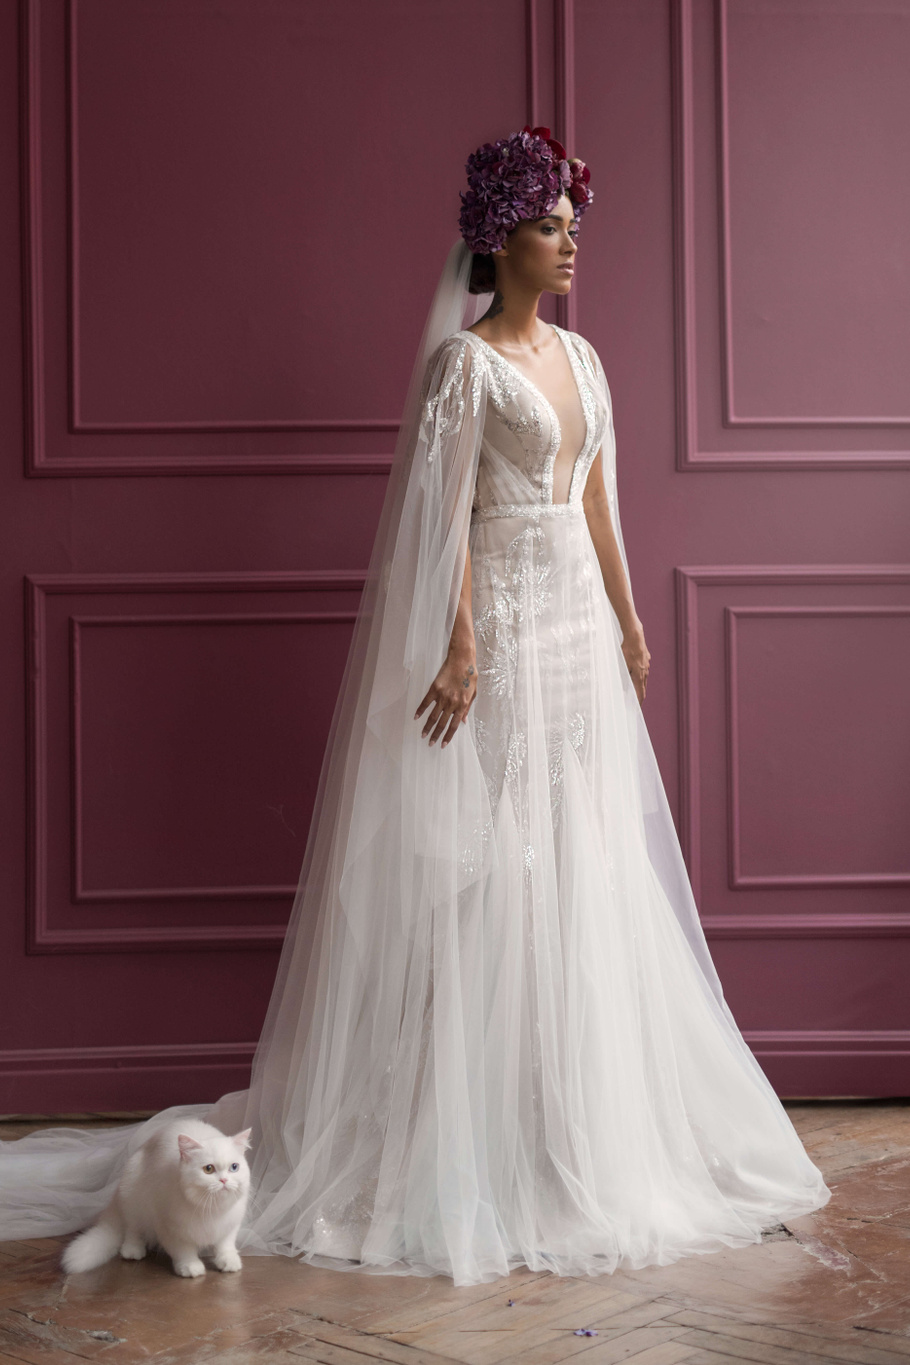 Купить свадебное платье «Матис» Бламмо Биамо из коллекции Нимфа 2020 года в Санкт-Петербурге